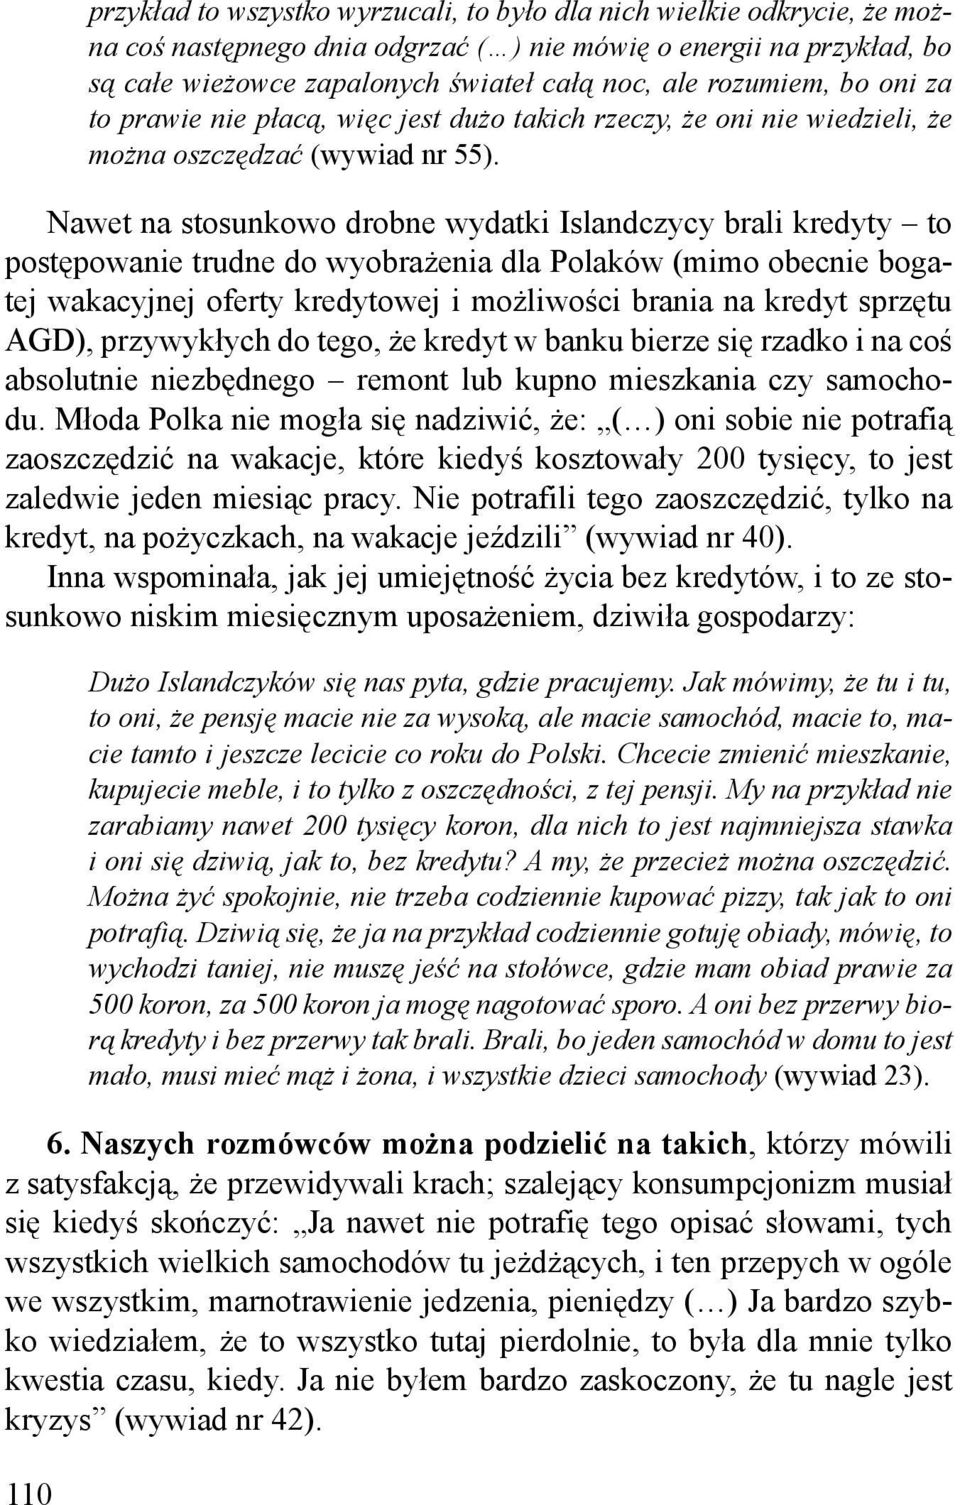 Nawet na stosunkowo drobne wydatki Islandczycy brali kredyty to postępowanie trudne do wyobrażenia dla Polaków (mimo obecnie bogatej wakacyjnej oferty kredytowej i możliwości brania na kredyt sprzętu